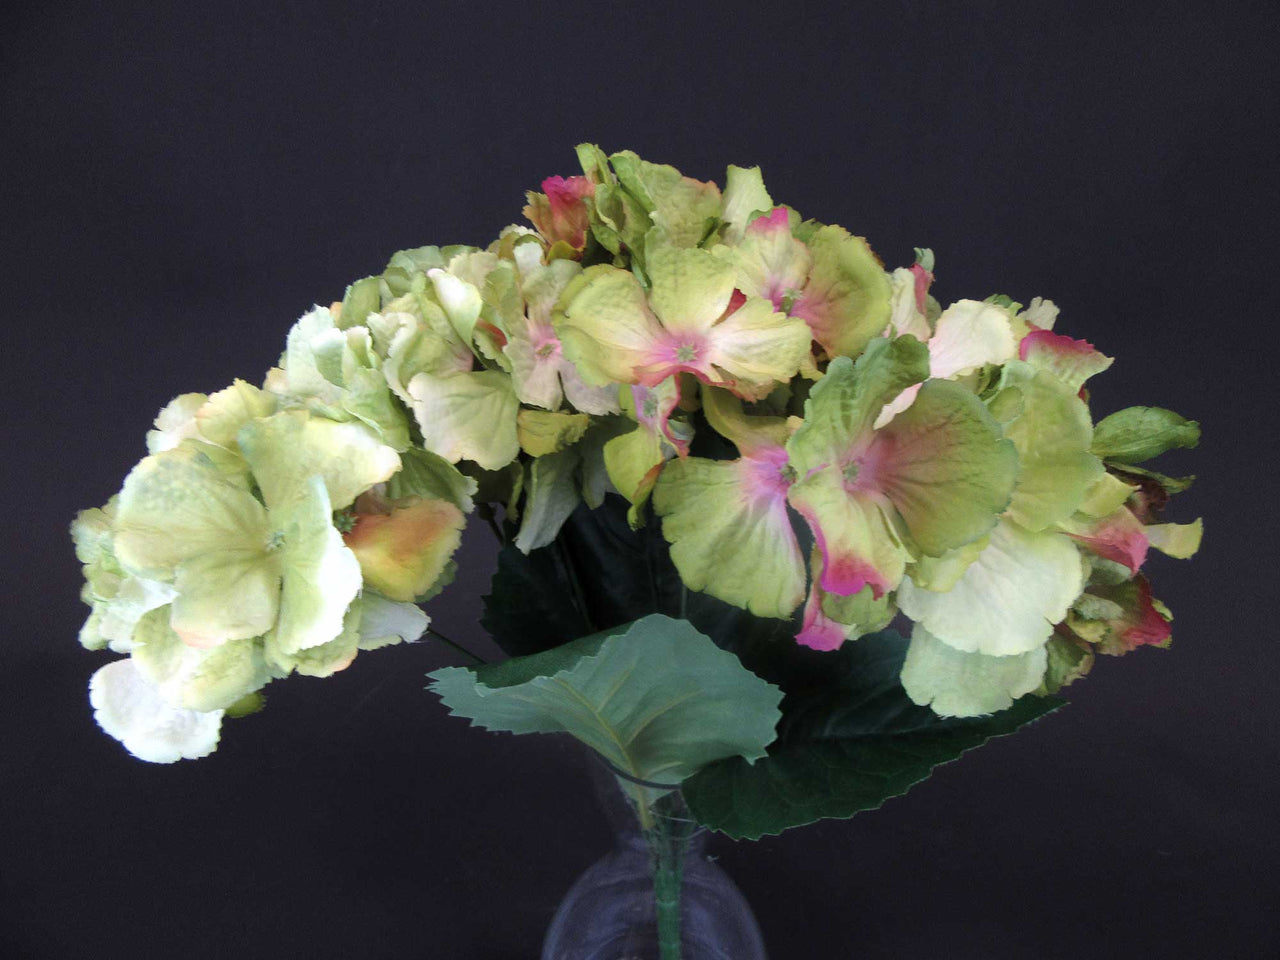 HCFL5990 - MIxed Green Hydrangea Bouquet